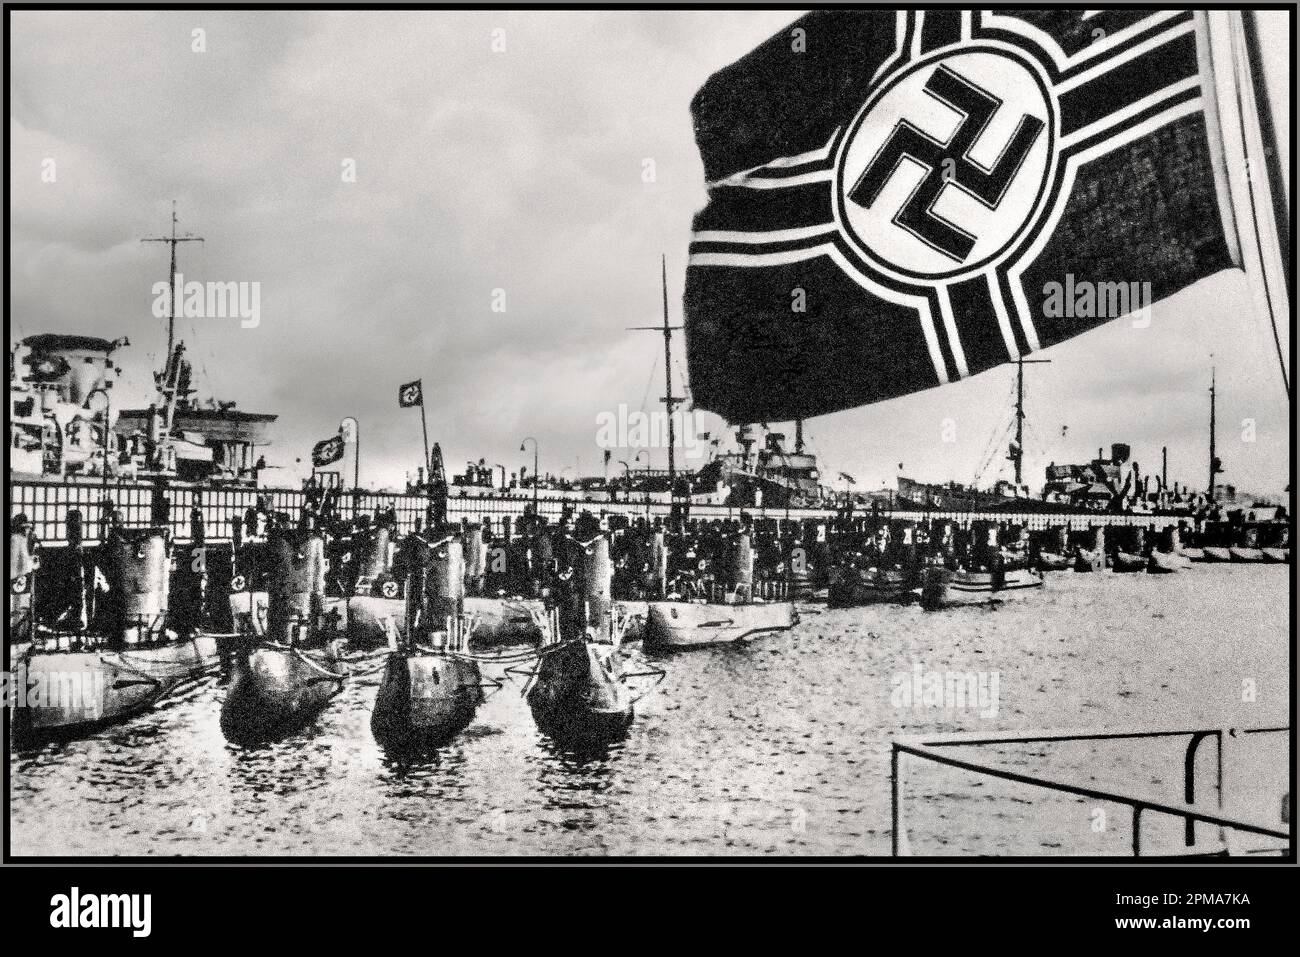 1940s WW2 penna sottomarina tedesca nazista con bandiera navale Kriegsmarine della Germania nazista che incorpora l'emblema della Swastika che vola in primo piano. Questa bandiera servì come War Ensign a bordo di tutte le navi da guerra naziste tedesche dal 7 novembre 1935 al 8 maggio 1945. E 'stato volato in porto e in mare dalla poppa flagstaff o il palo principale. Bandiera imperiale di guerra (Reichskriegsflagge). Seconda guerra mondiale seconda guerra mondiale Foto Stock